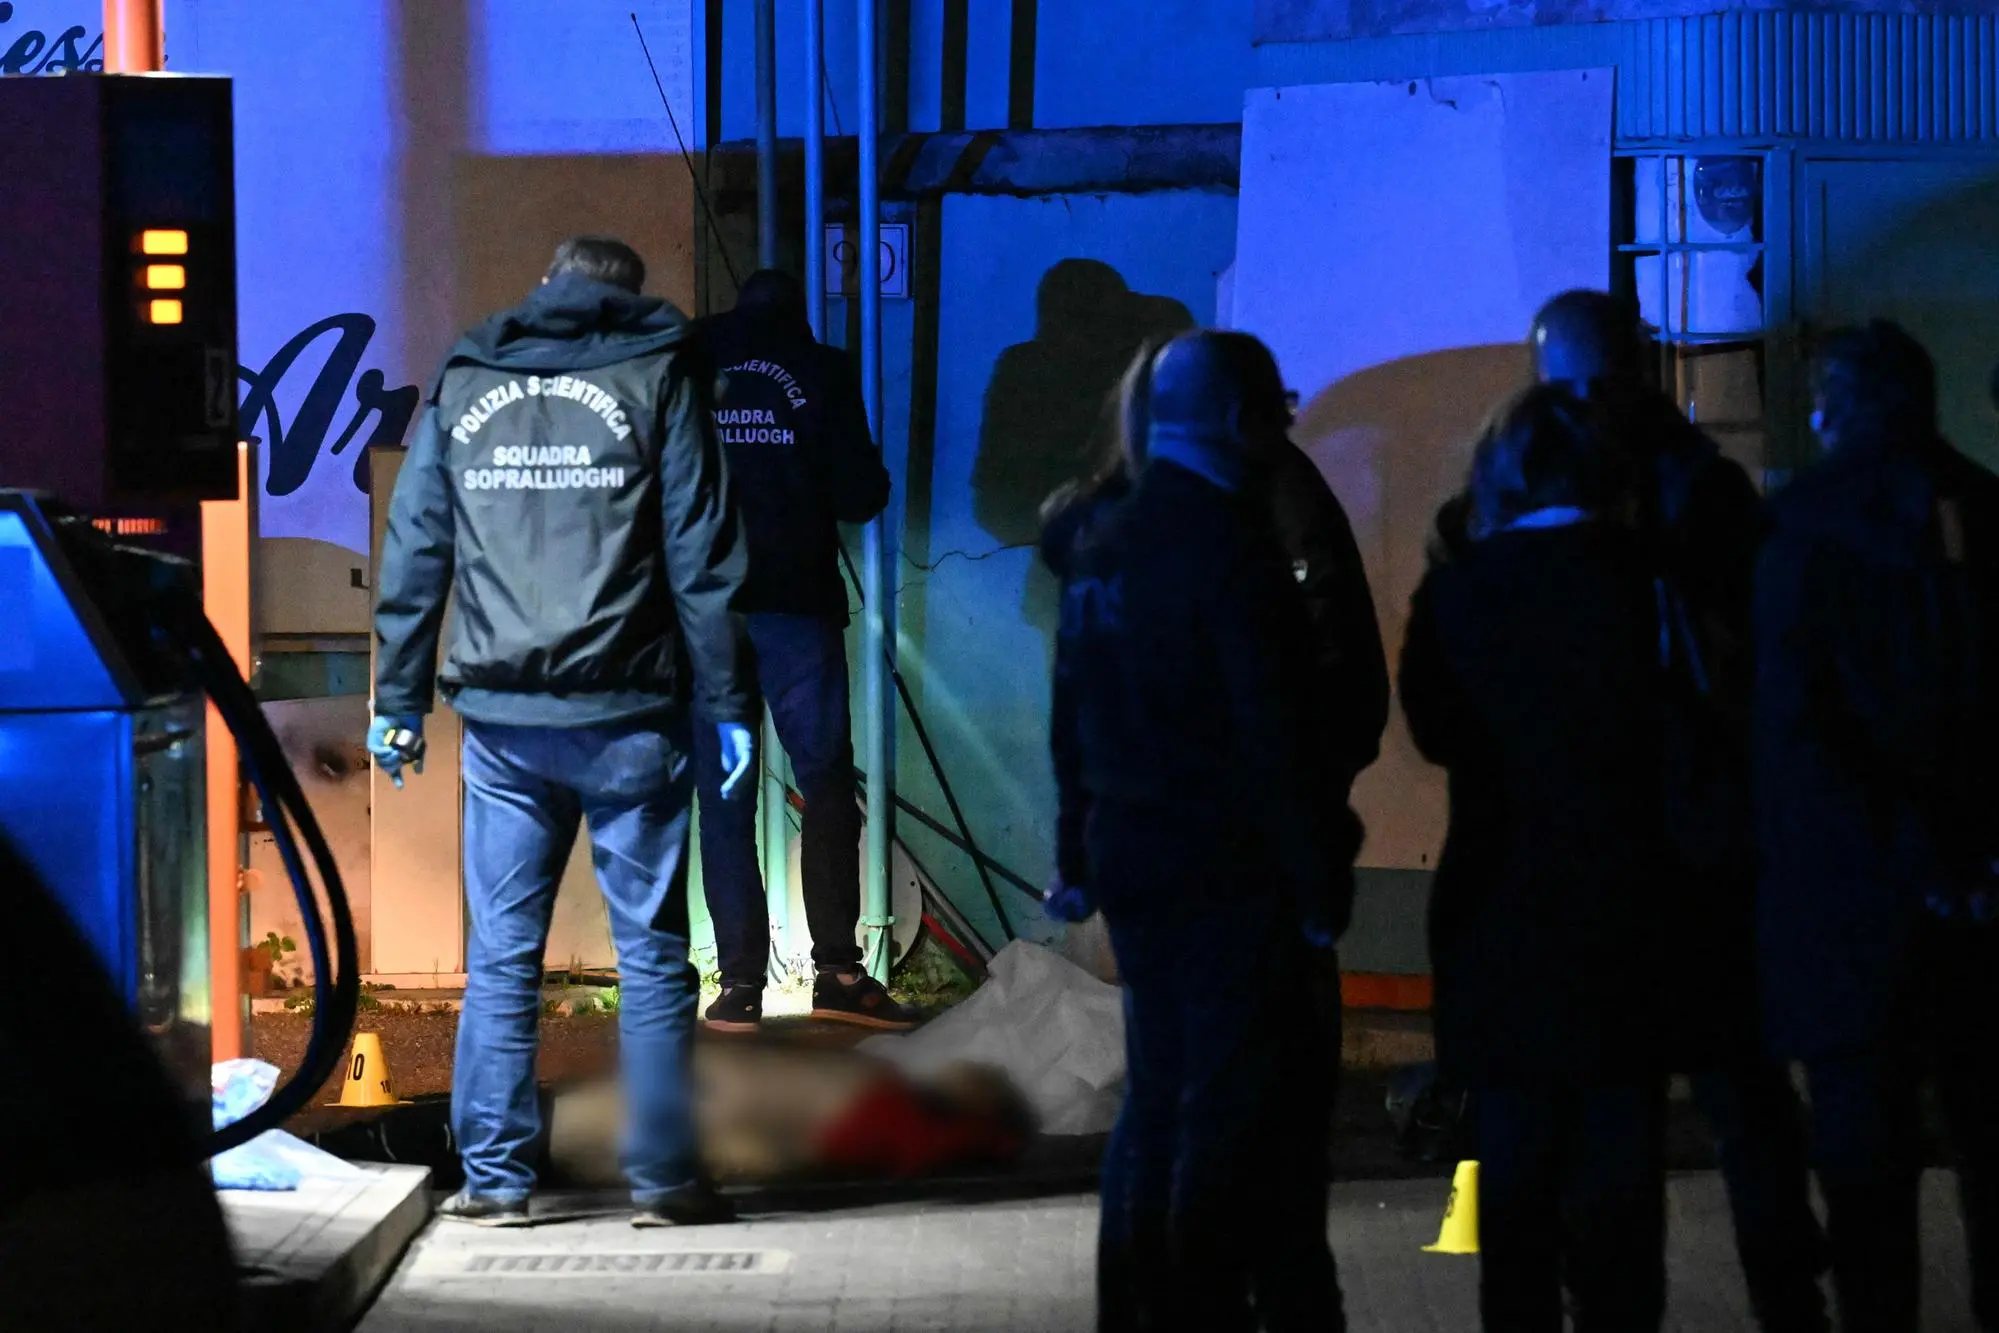 Squadra mobile indaga sull'omicidio di un uomo di 51 anni, italiano, ucciso nel quartiere Torpignattara. L'uomo era dal benzinaio quando è stato raggiunta da alcuni colpi di arma da fuoco, Roma 13 marzo 2023. ANSA/CLAUDIO PERI